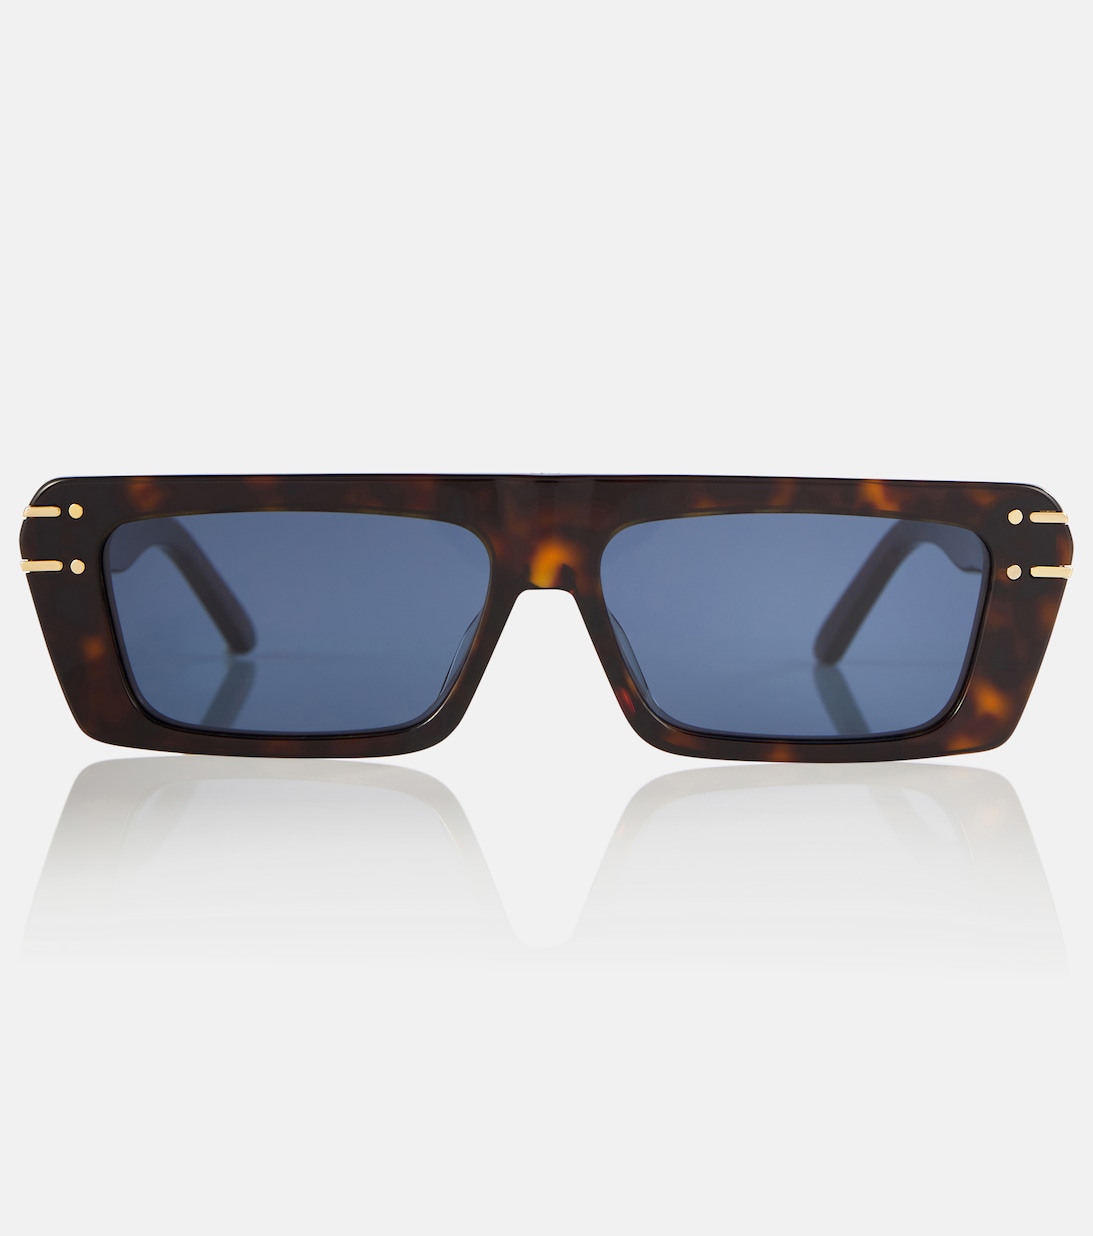 Солнцезащитные очки DiorSignature S2U черепаховой расцветки Dior Eyewear, коричневый